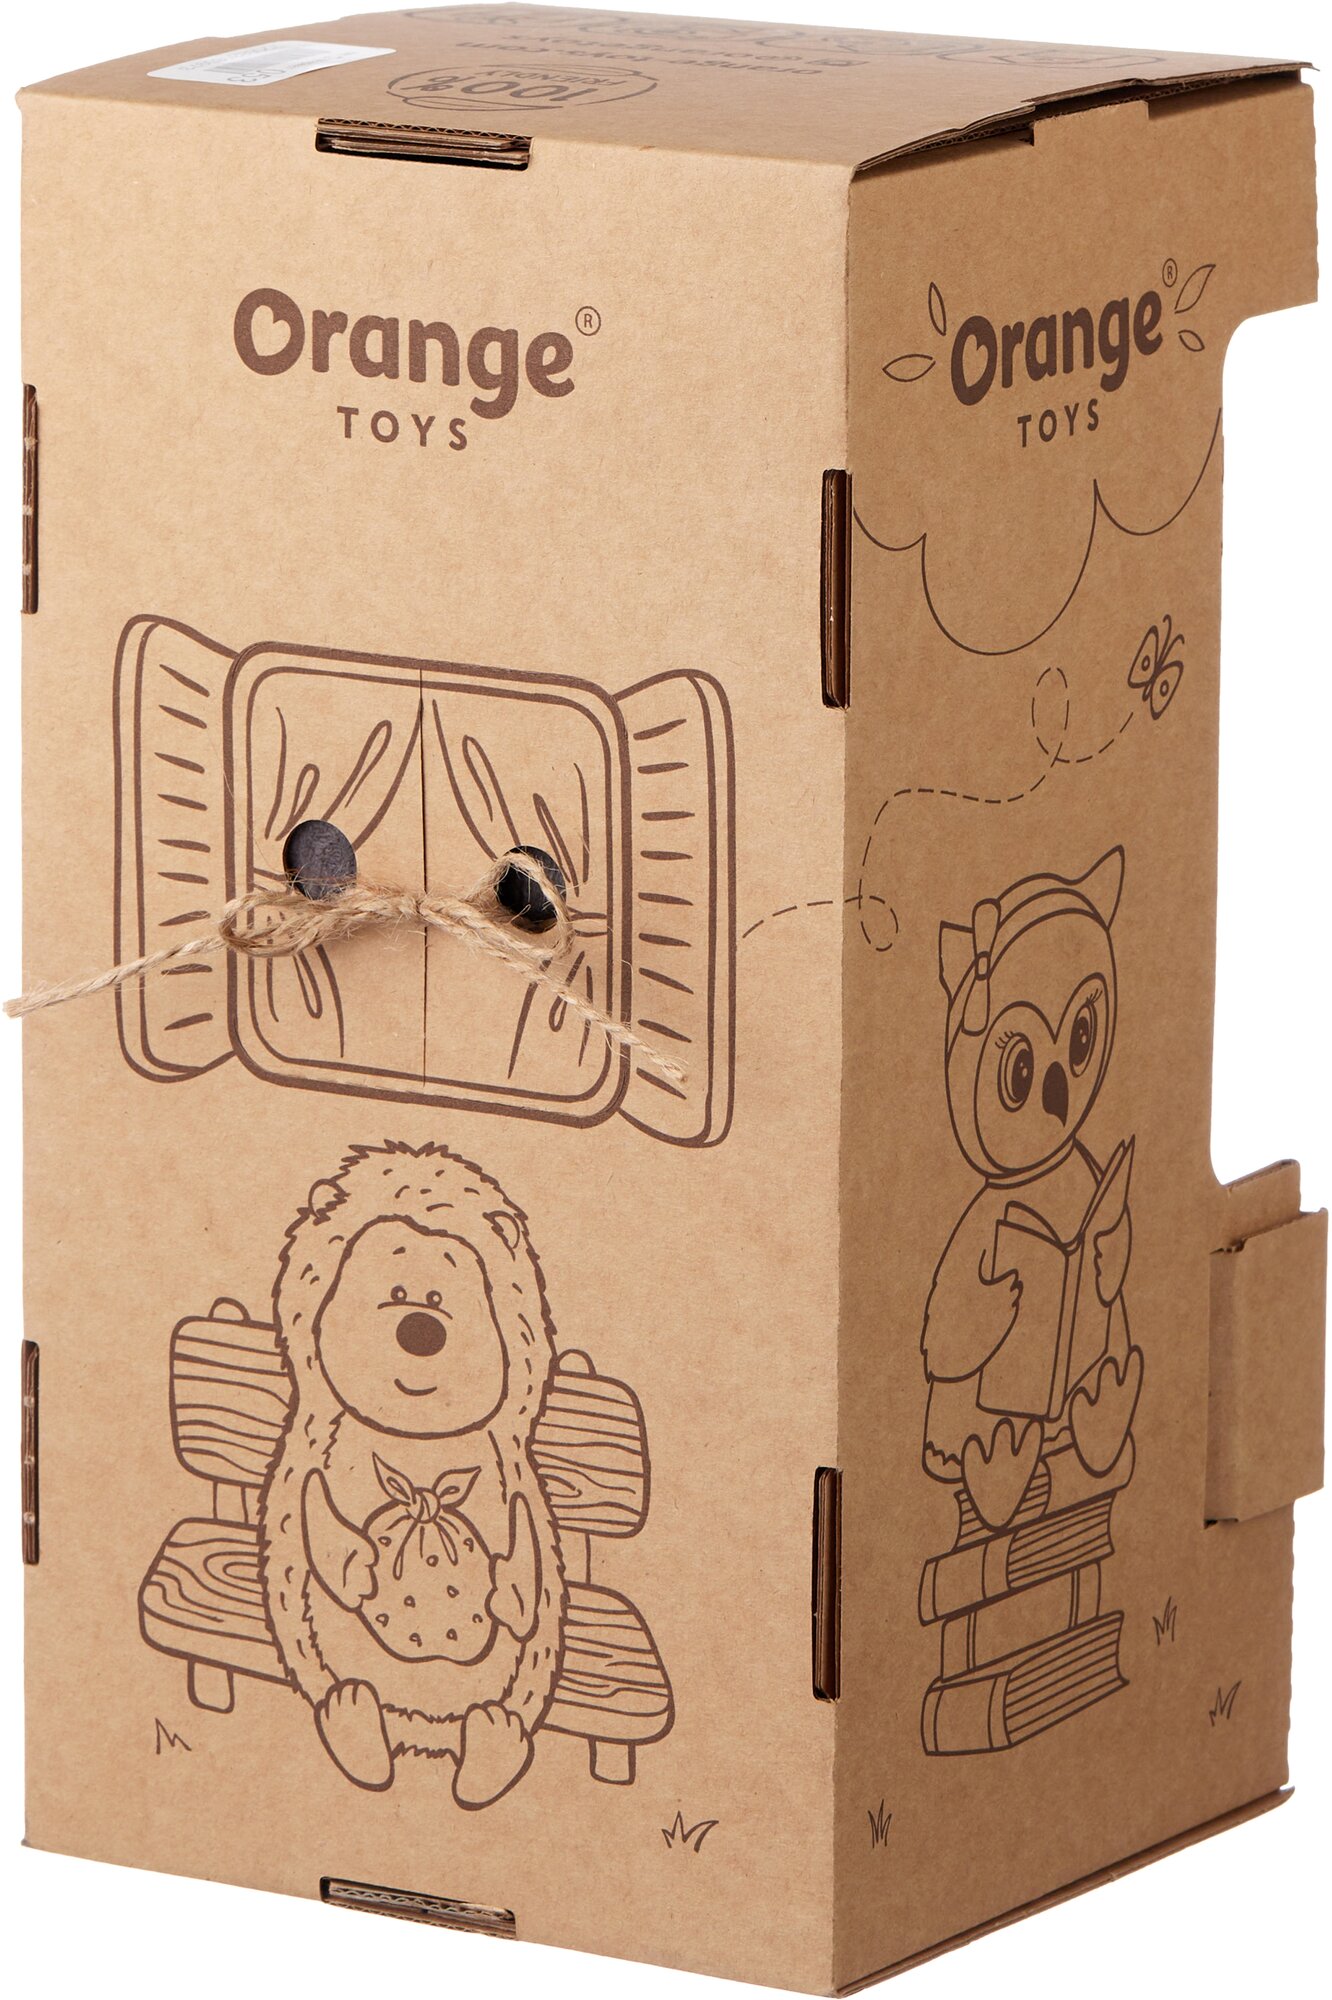 Orange Мягкая игрушка Life "Енотик Дэйзи: Цветок", 25 см Orange Toys - фото №5